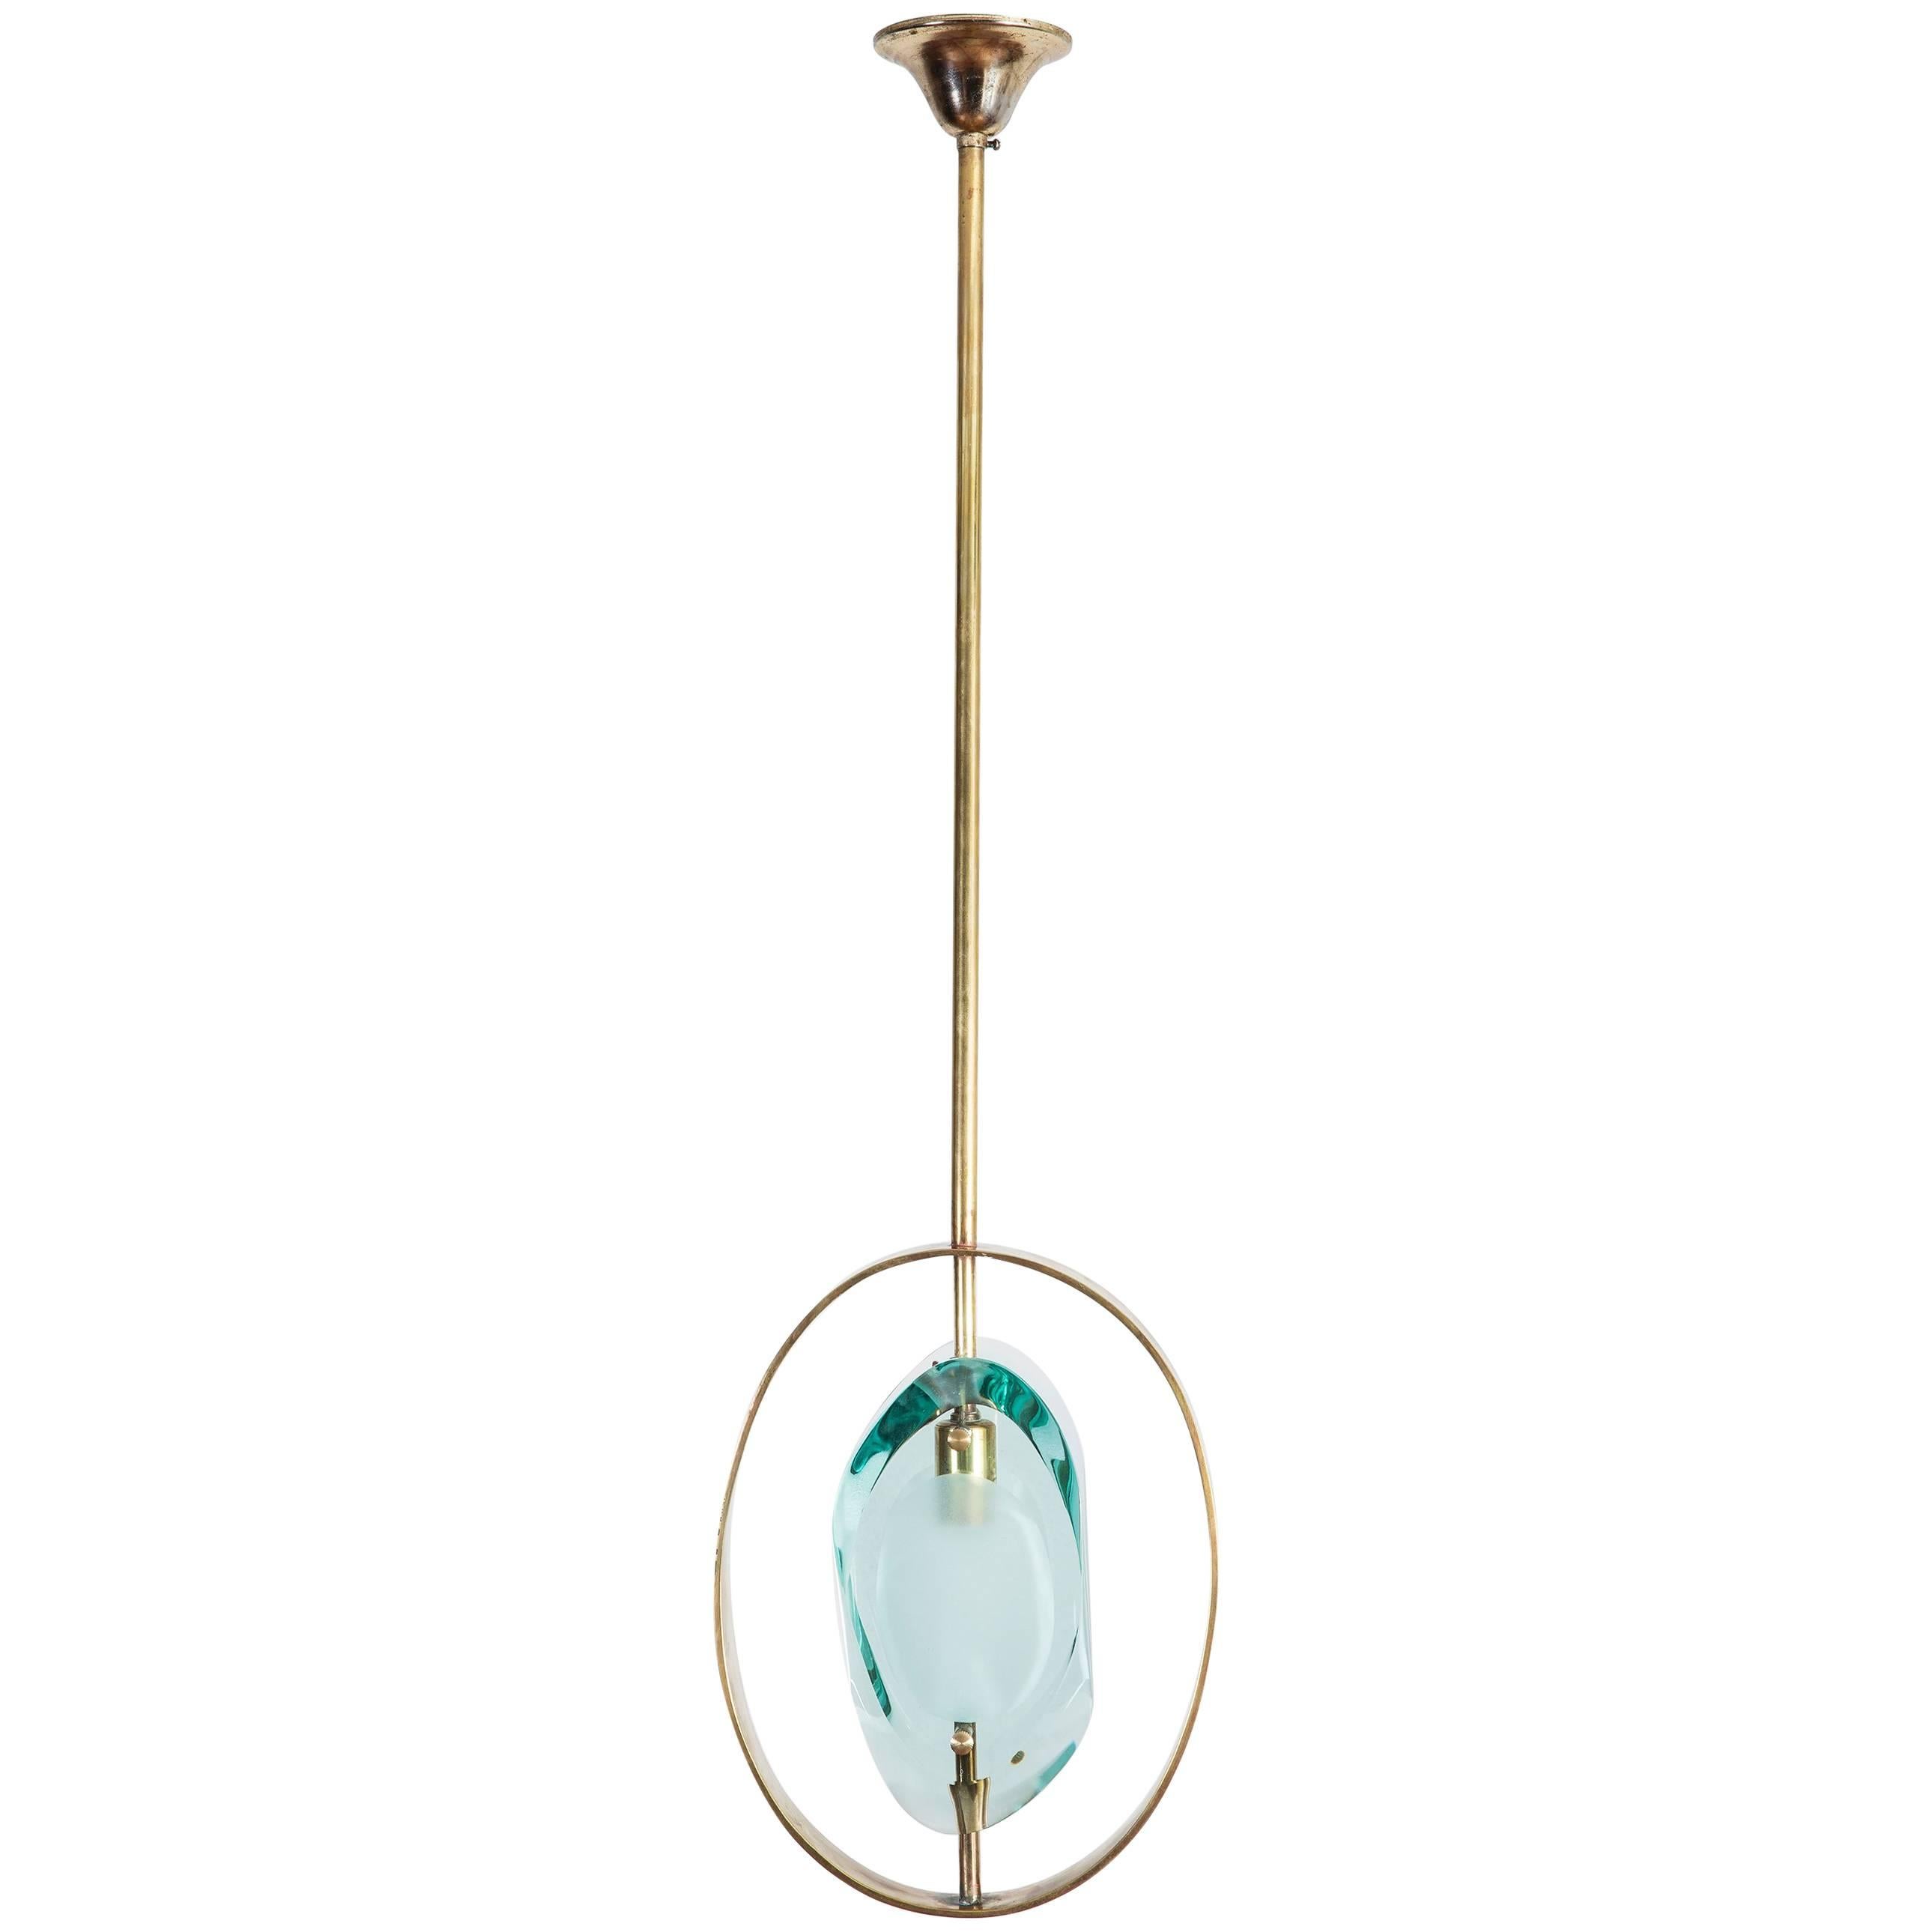 Max Ingrand Brass Pendant Ceiling Lamp 'Model 1933' for Fontana Arte, 1961